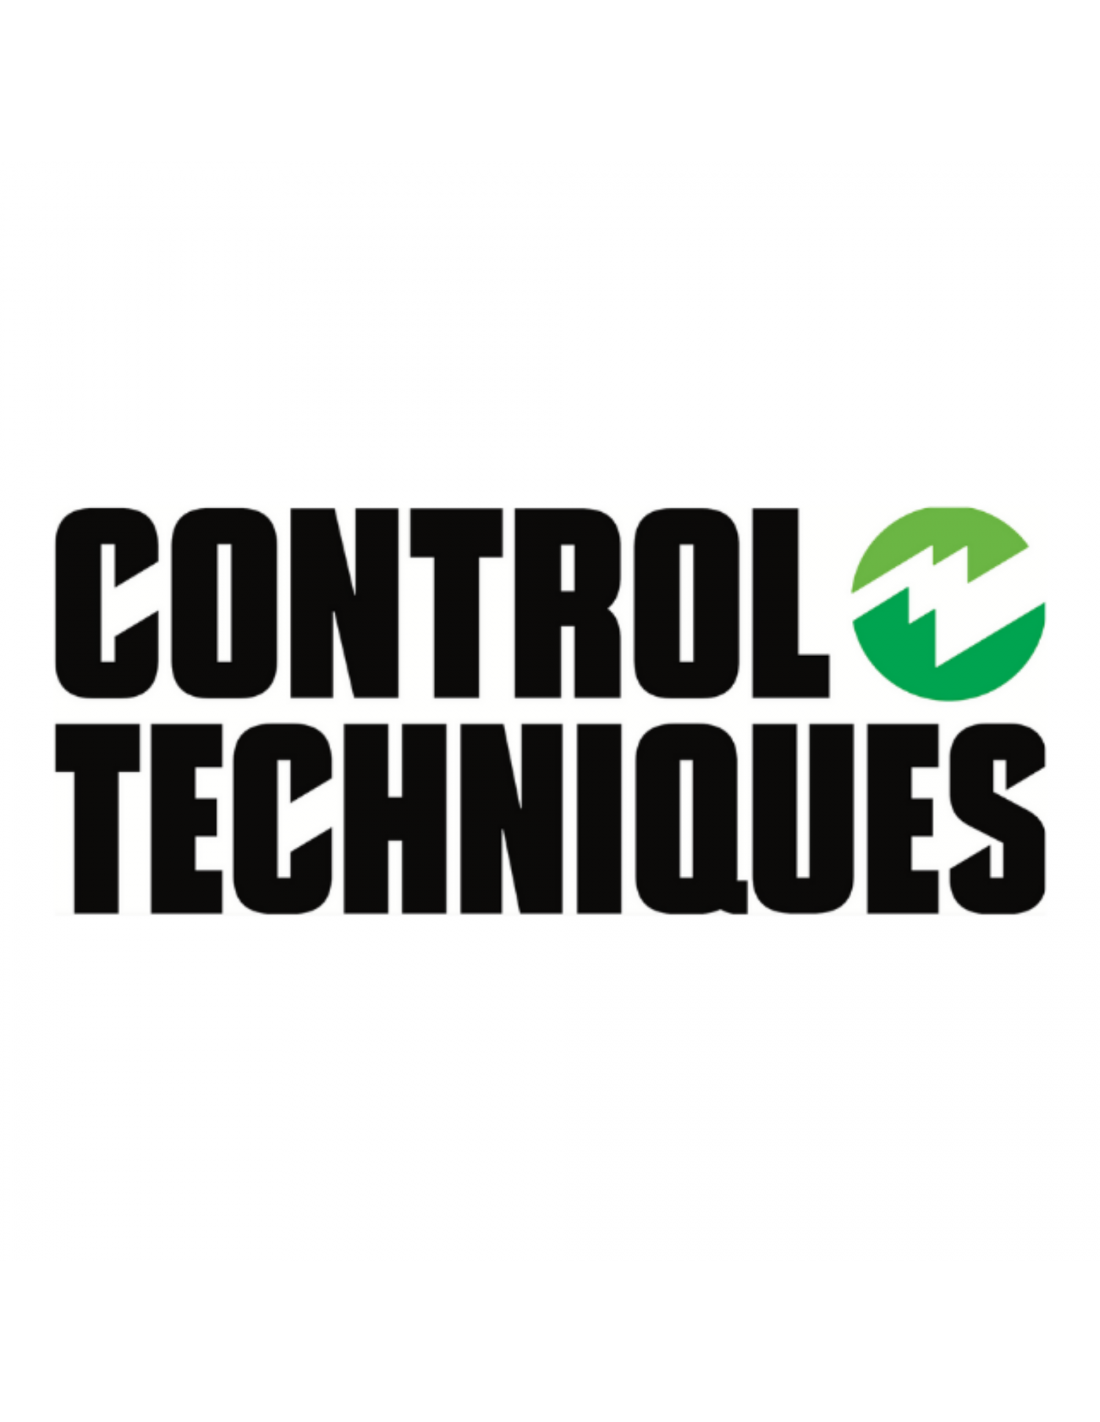 Control techniques. Control techniques logo. Control Technics. Nidec Control techniques.